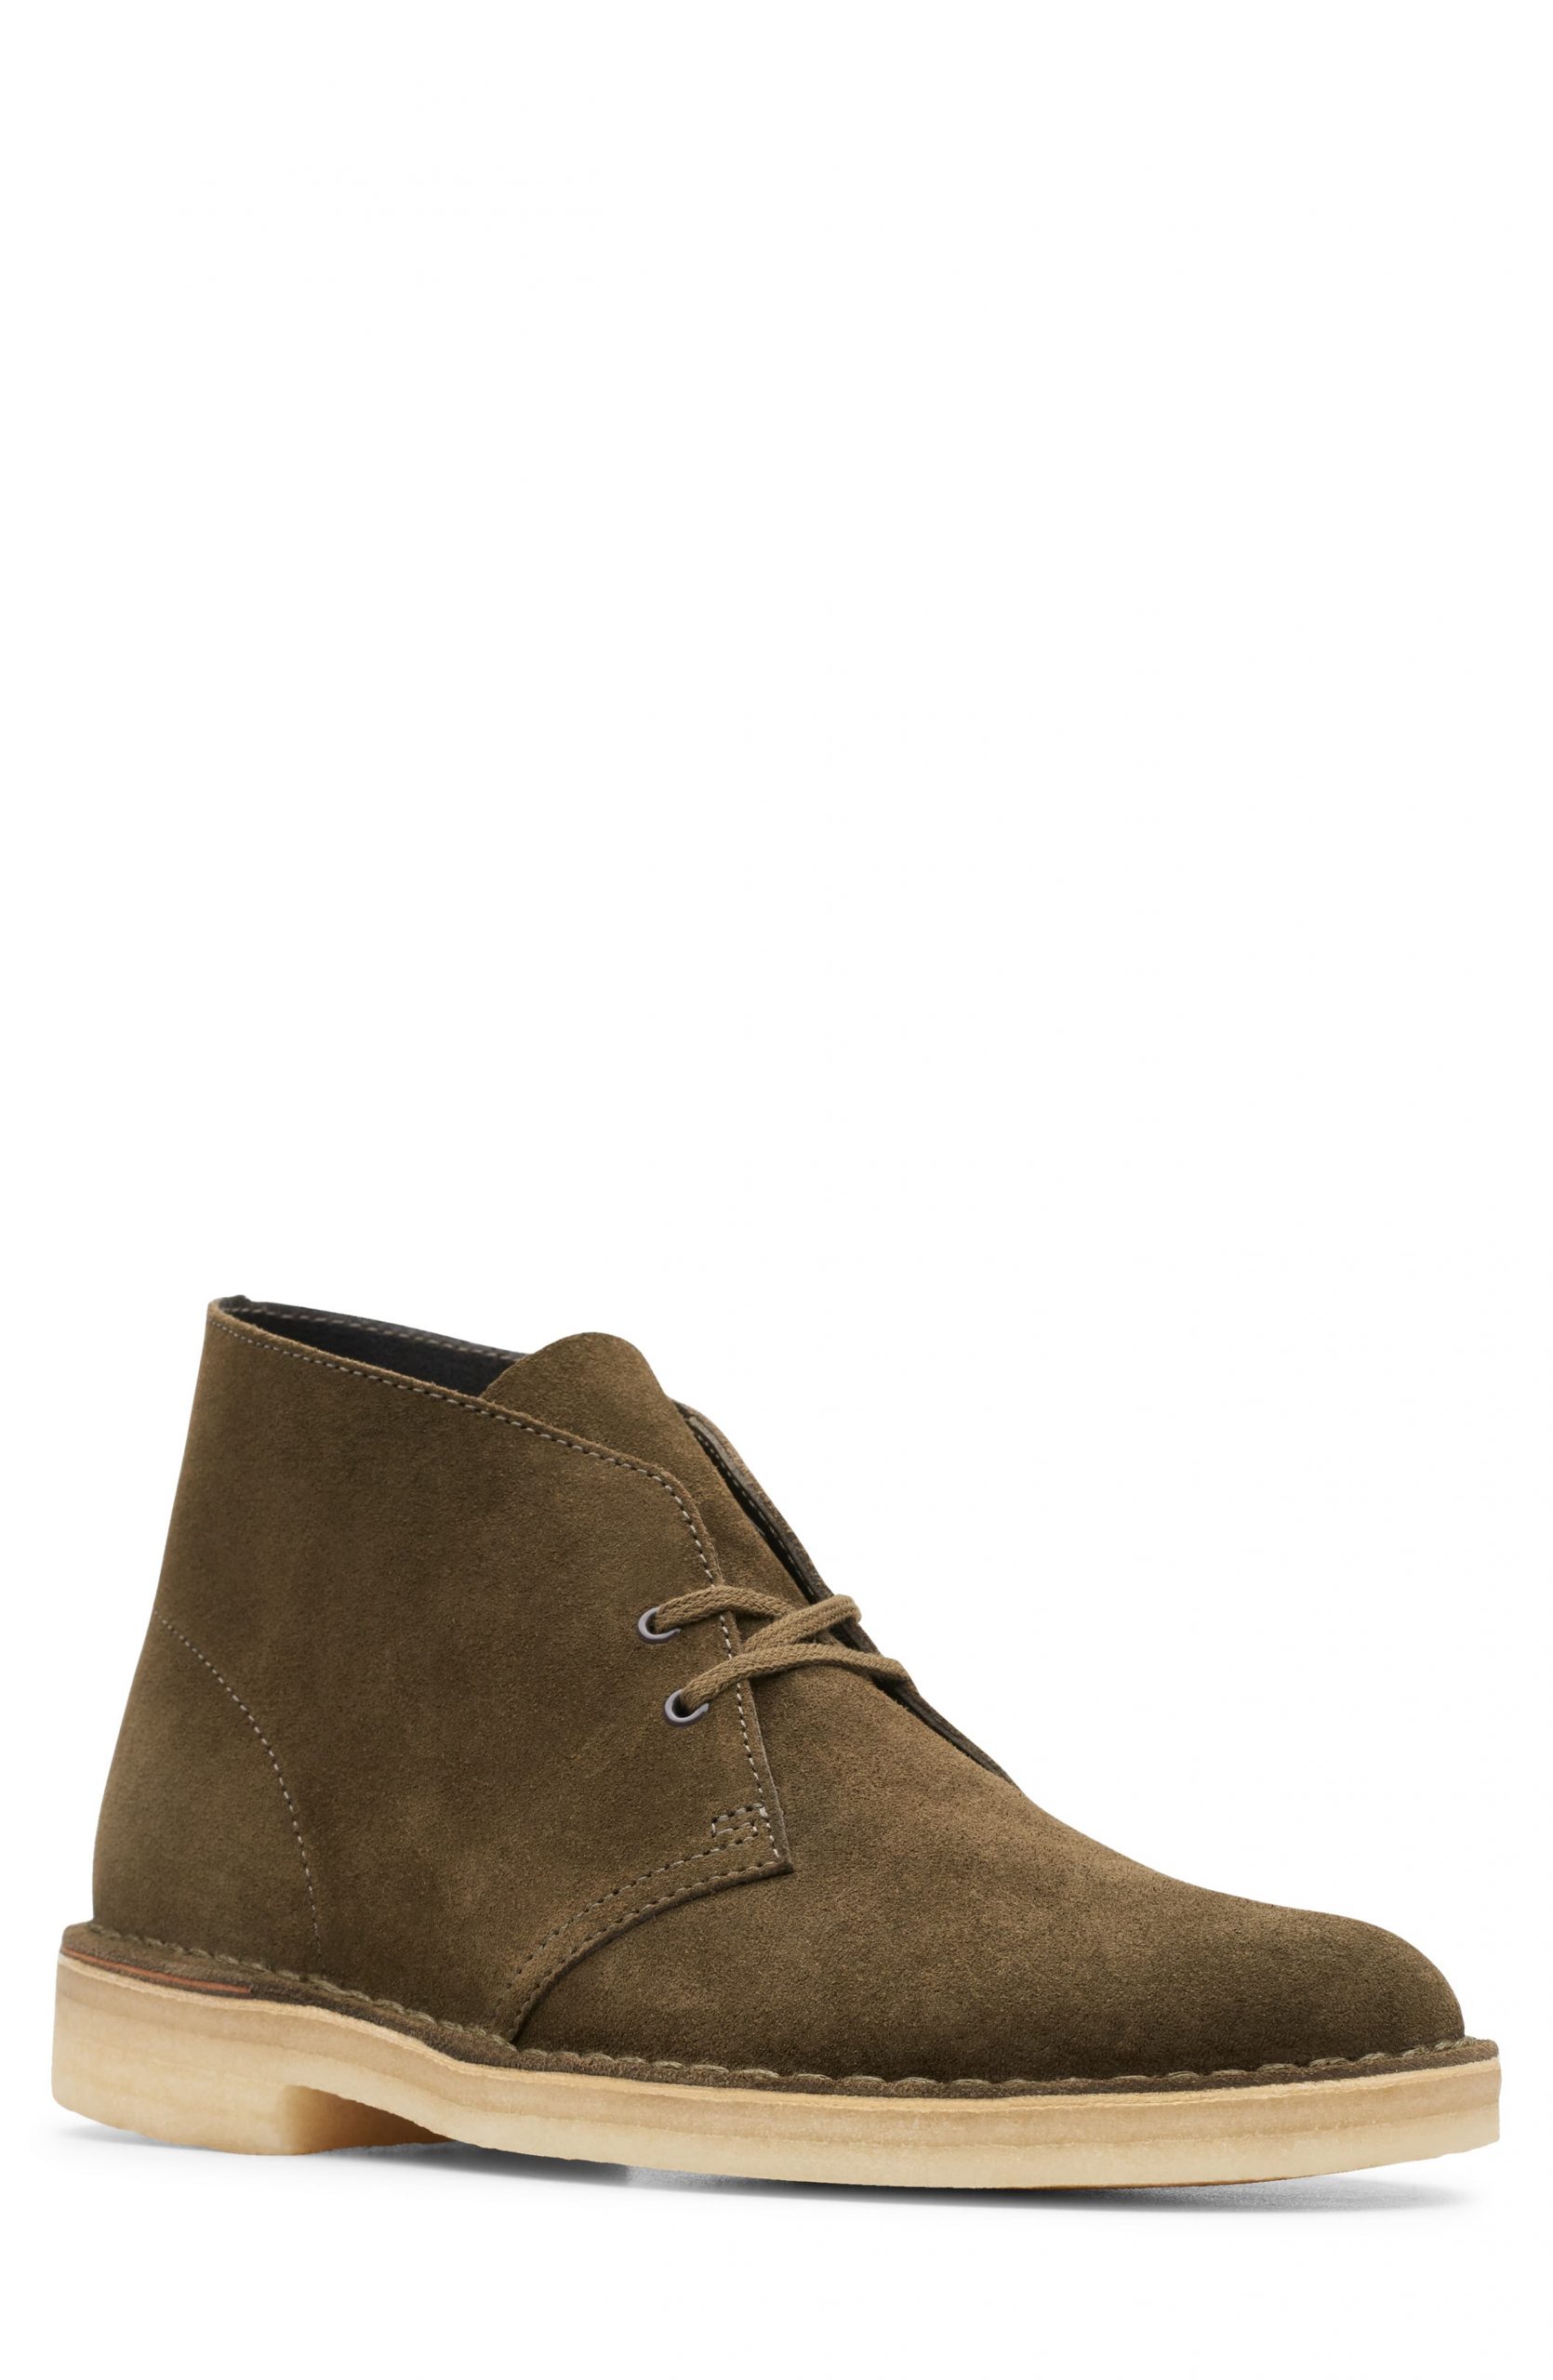 Men’s Clarks Desert Chukka Boot, Size 7 M - Green | The Fashionisto